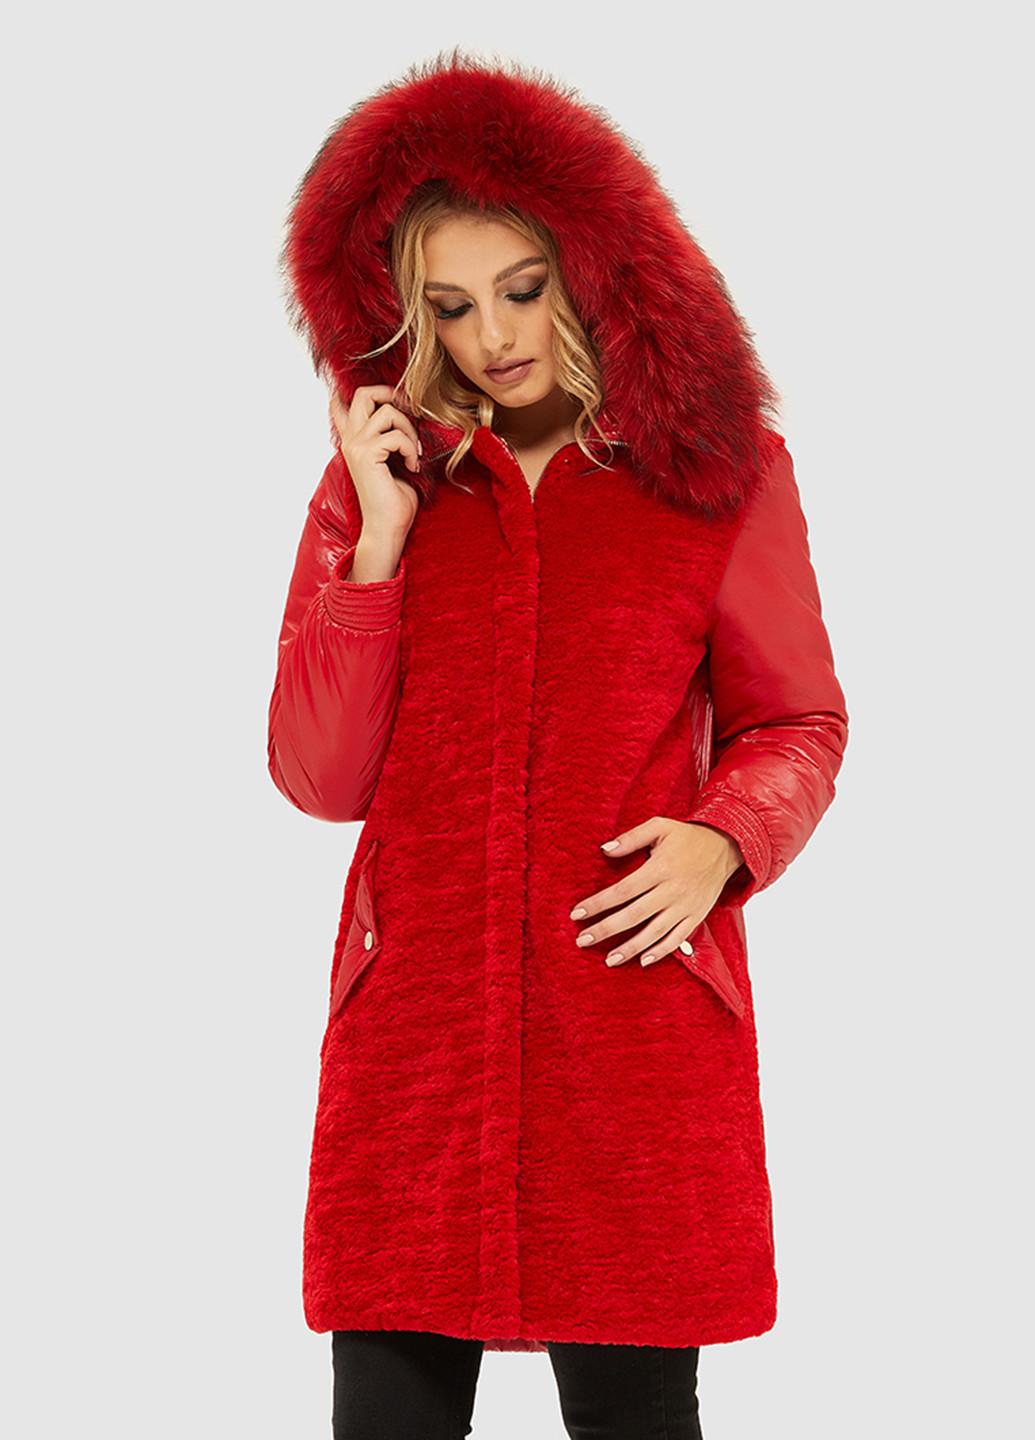 Красная зимняя куртка MN